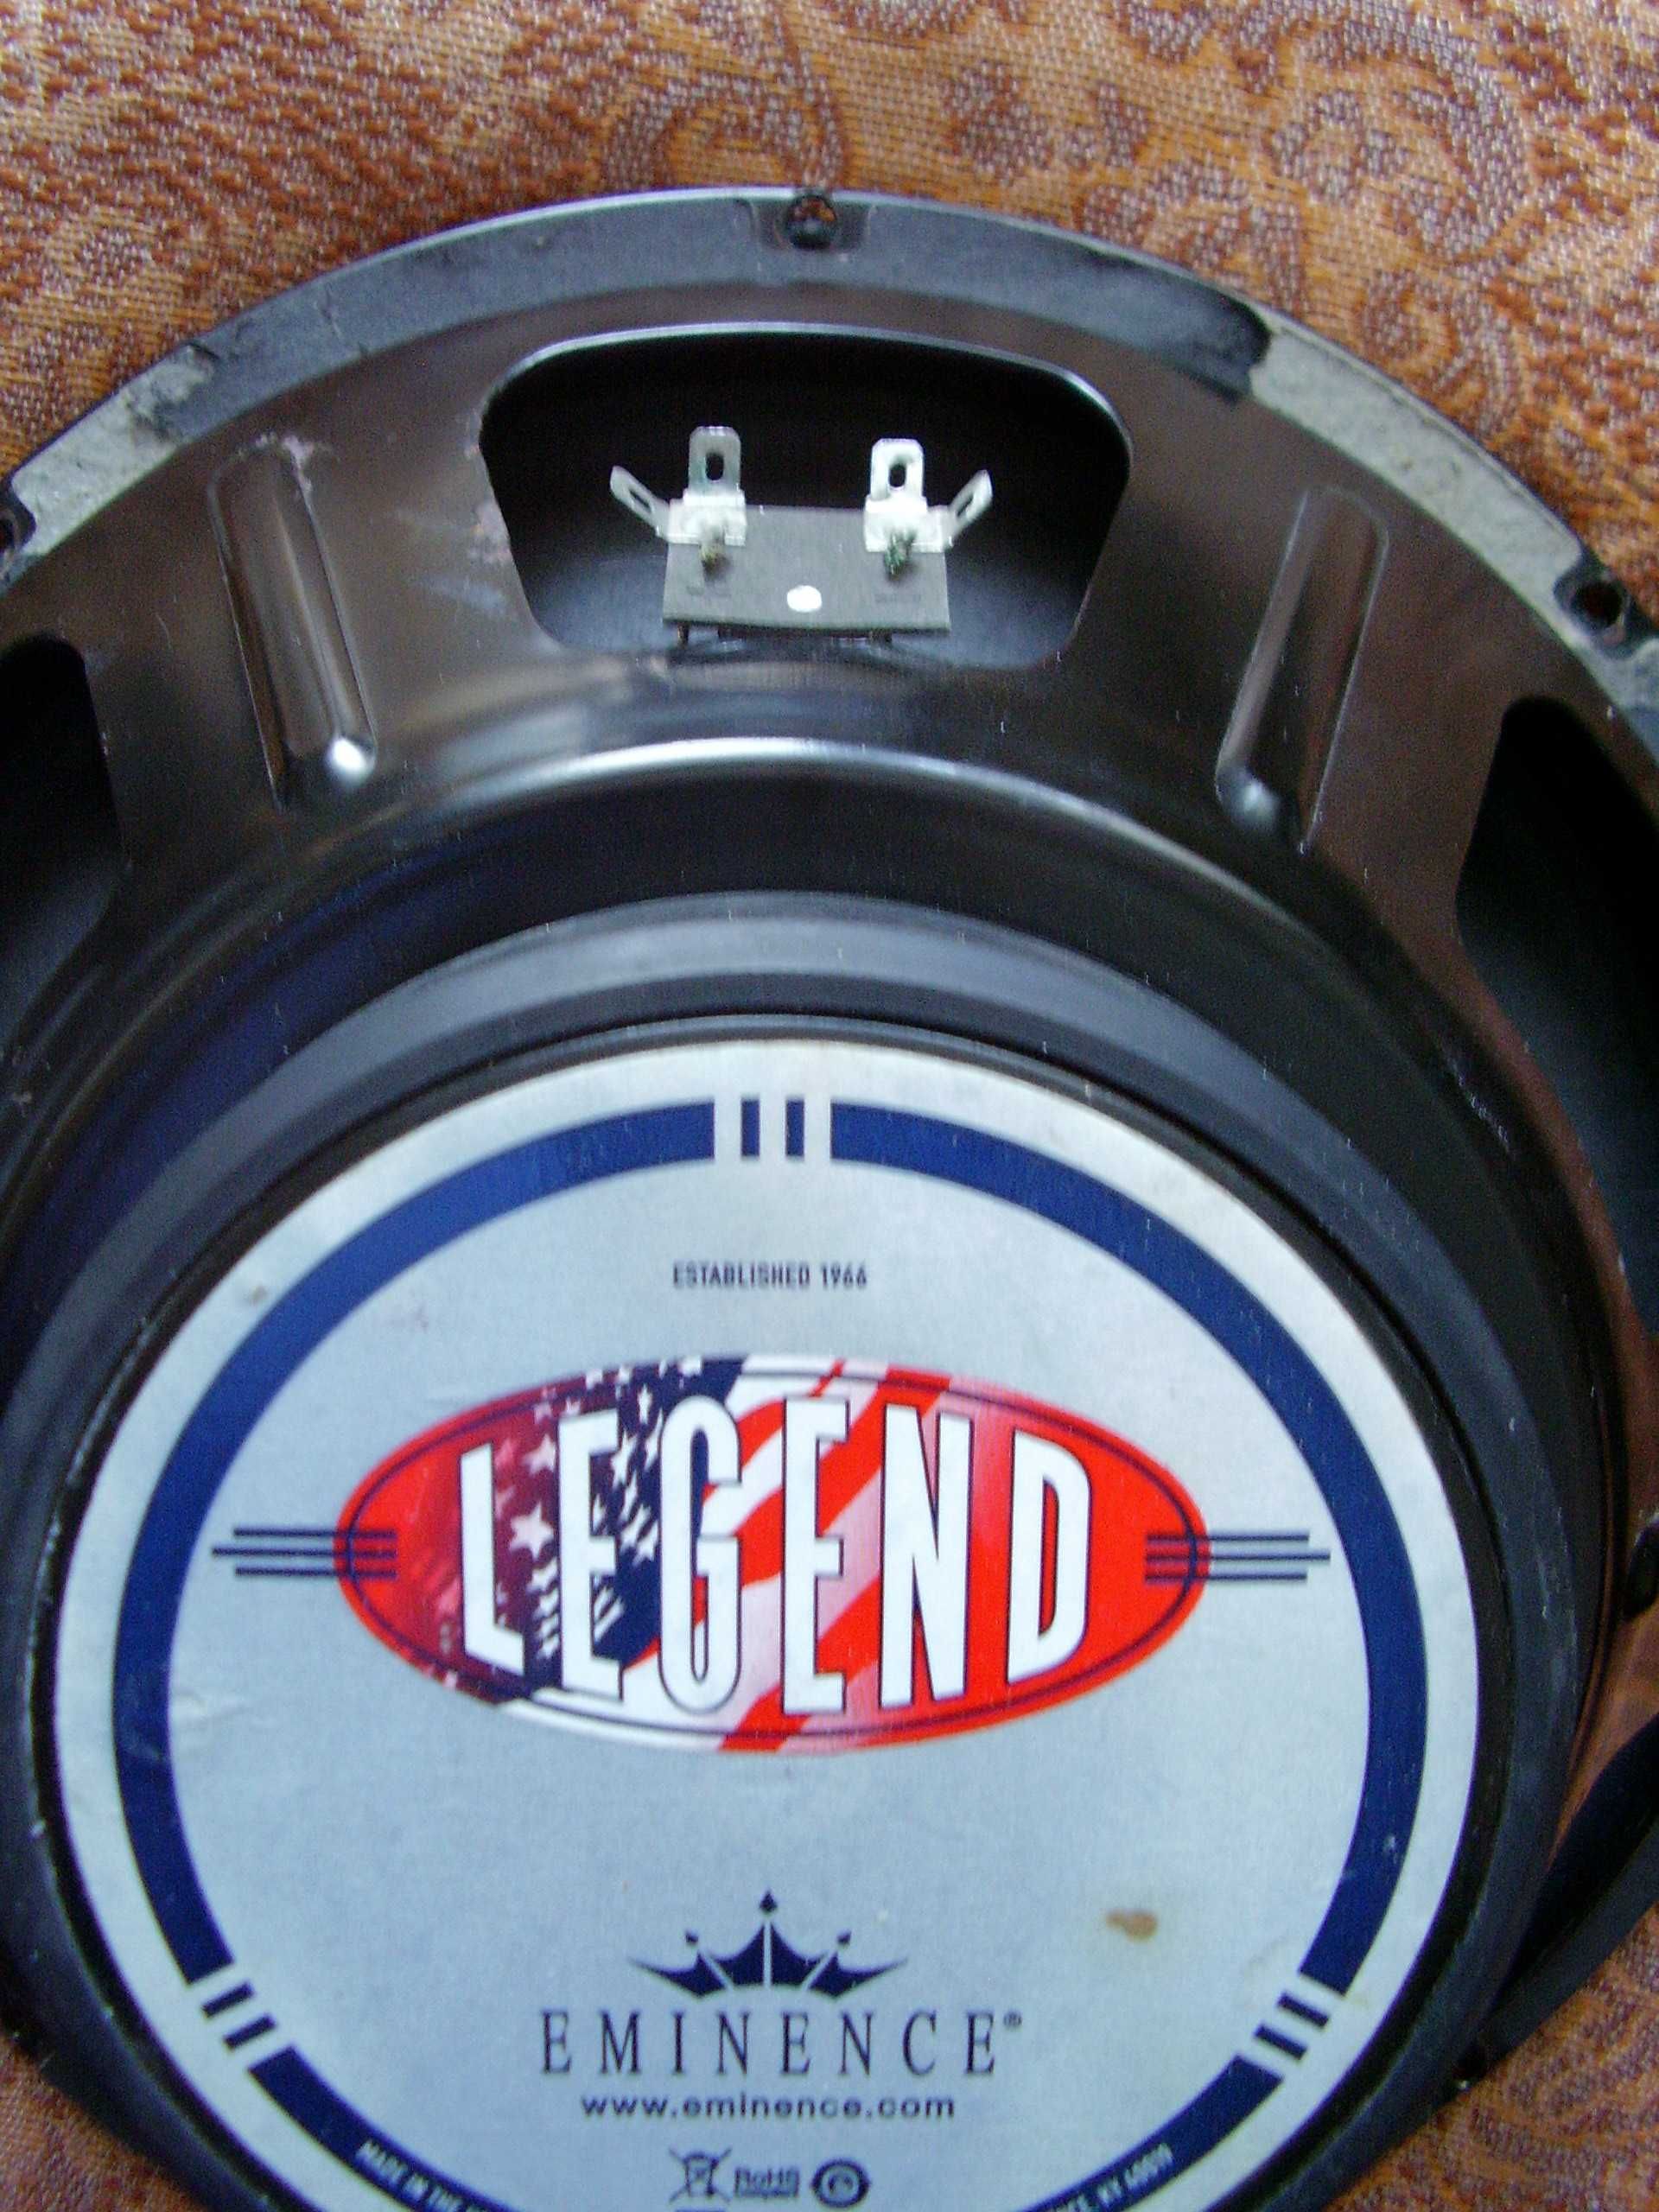 Głośnik Eminence Legend 12" 200W rms 8 ohm model KY 40019